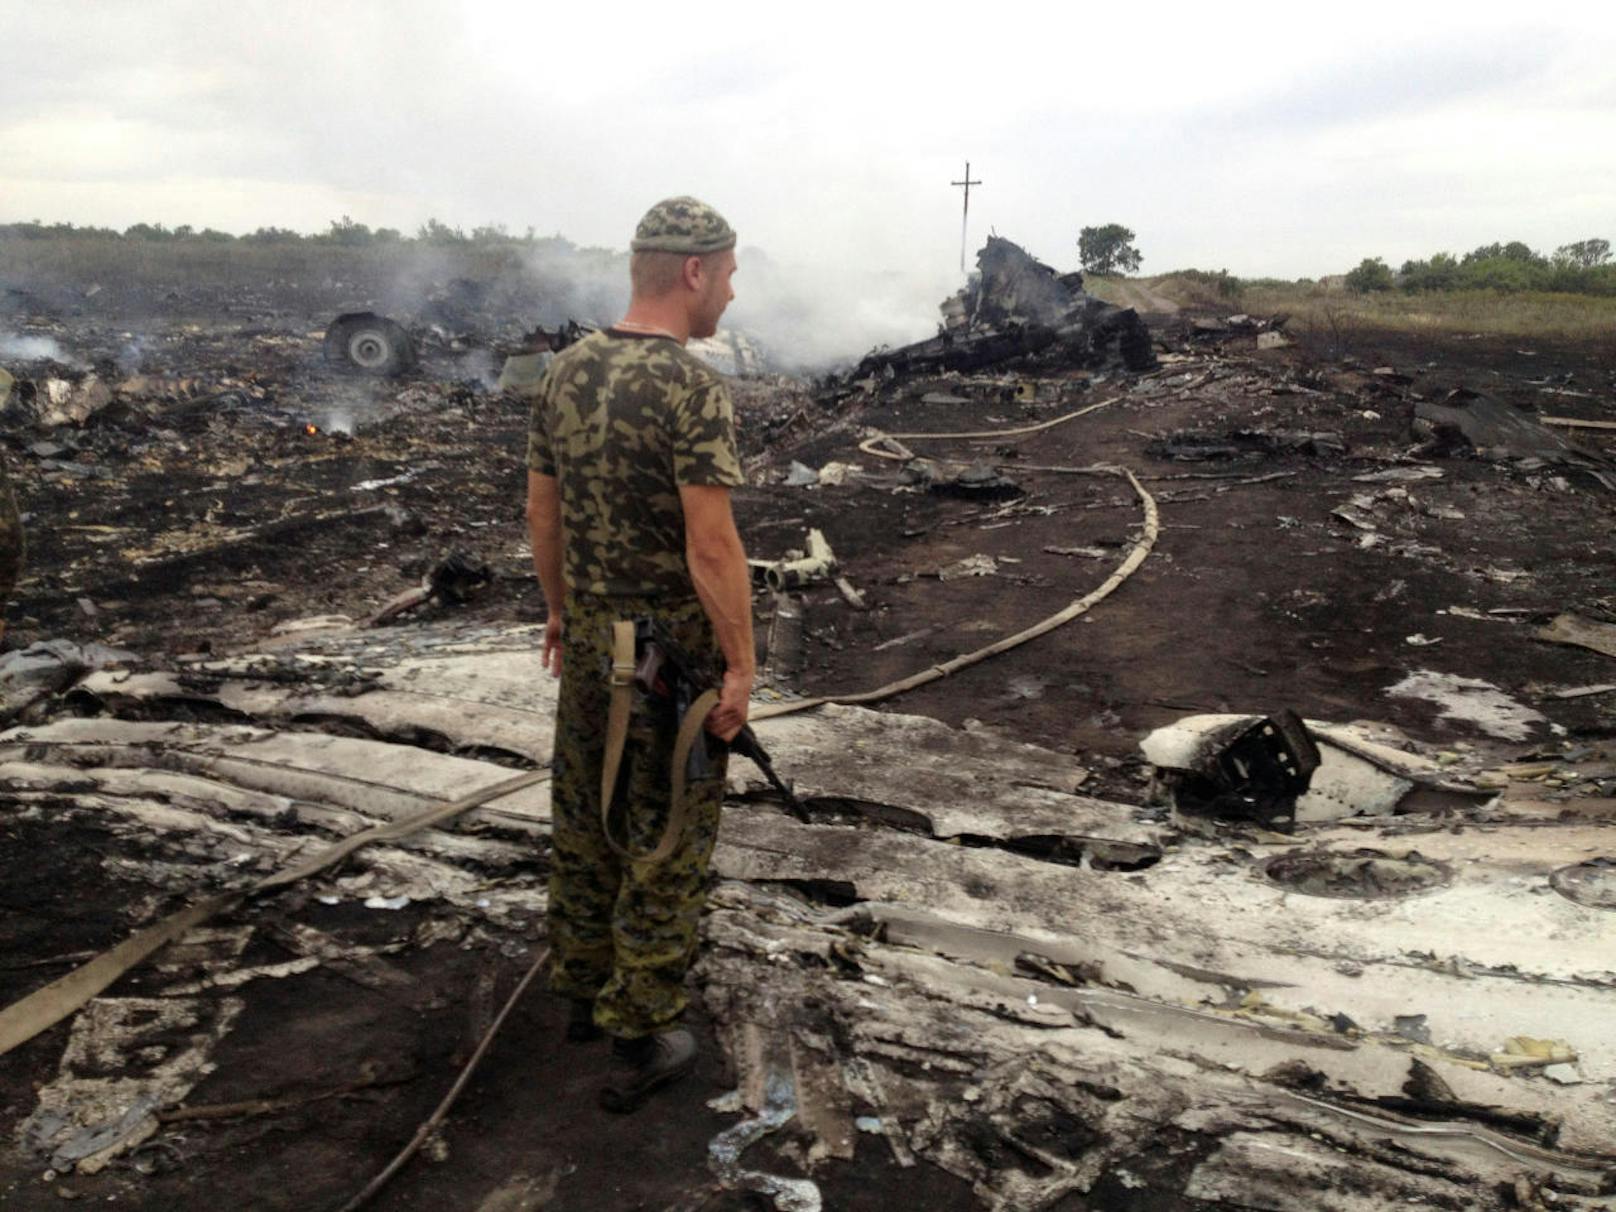 Die Unglücksstelle bei Grabowo in der Ukraine am 17. Juli 2014. Das Bild zeigt ein Mitglied der ukrainischen Regierung vor Ort.